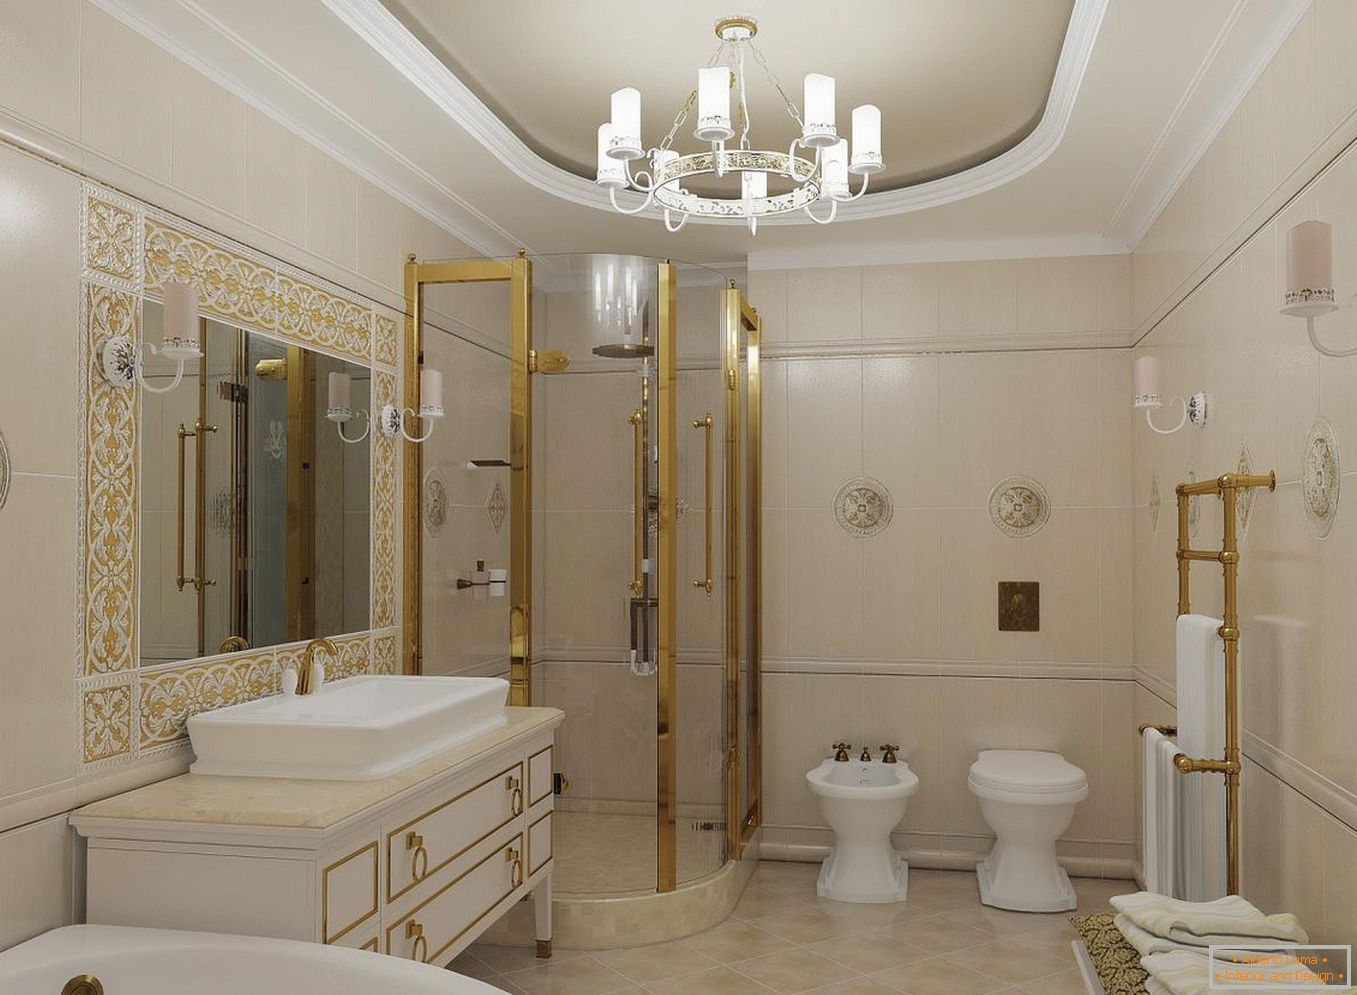 Cabine de chuveiro в ванной в классическом стиле